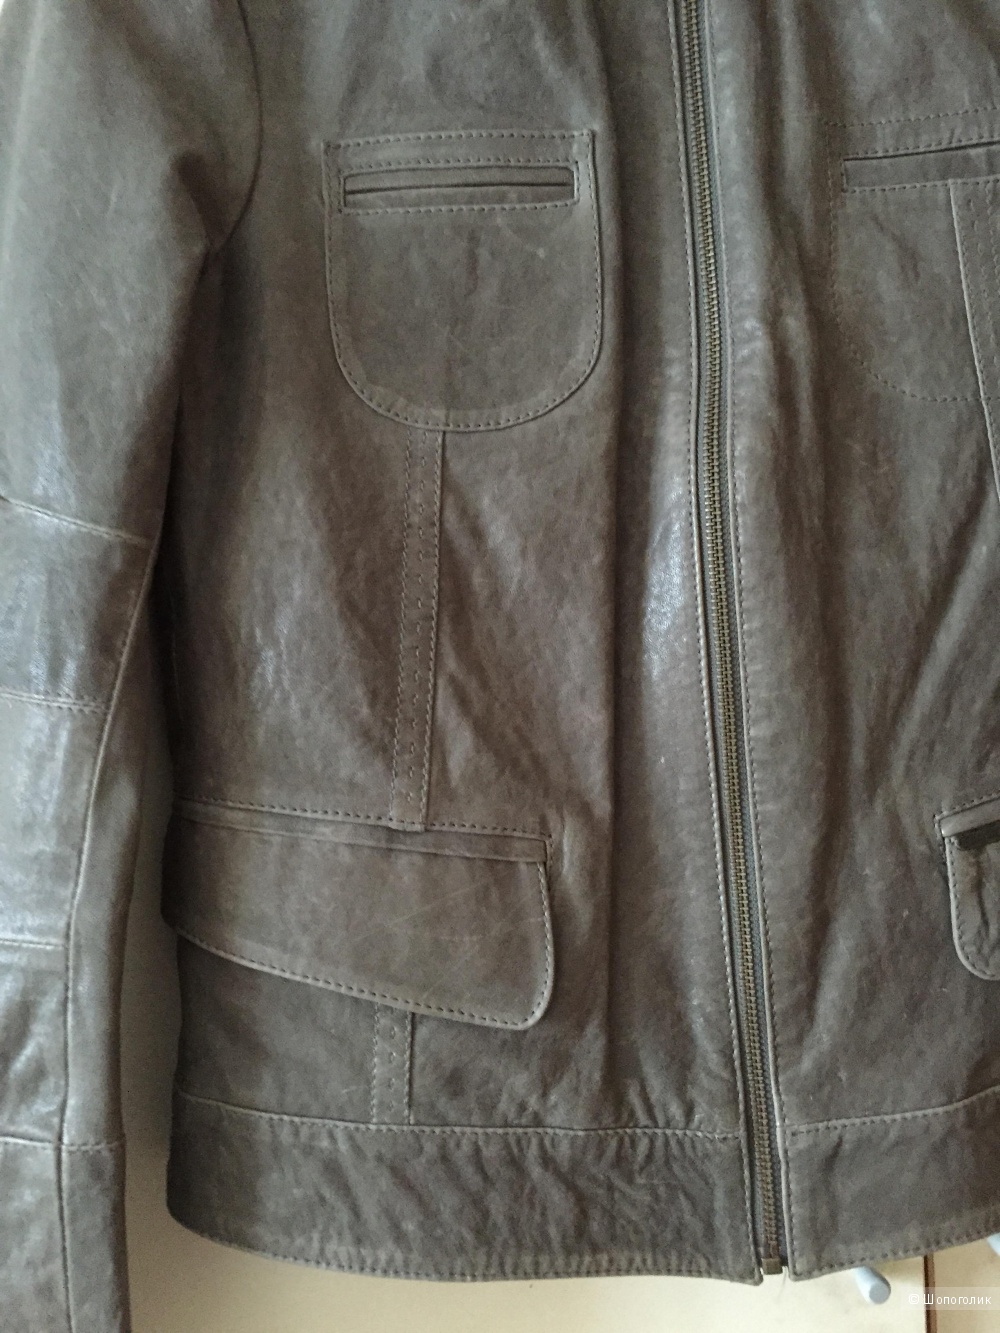 Кожаная куртка французской марки CHEVIGNON размер L маломерит очень сильно!